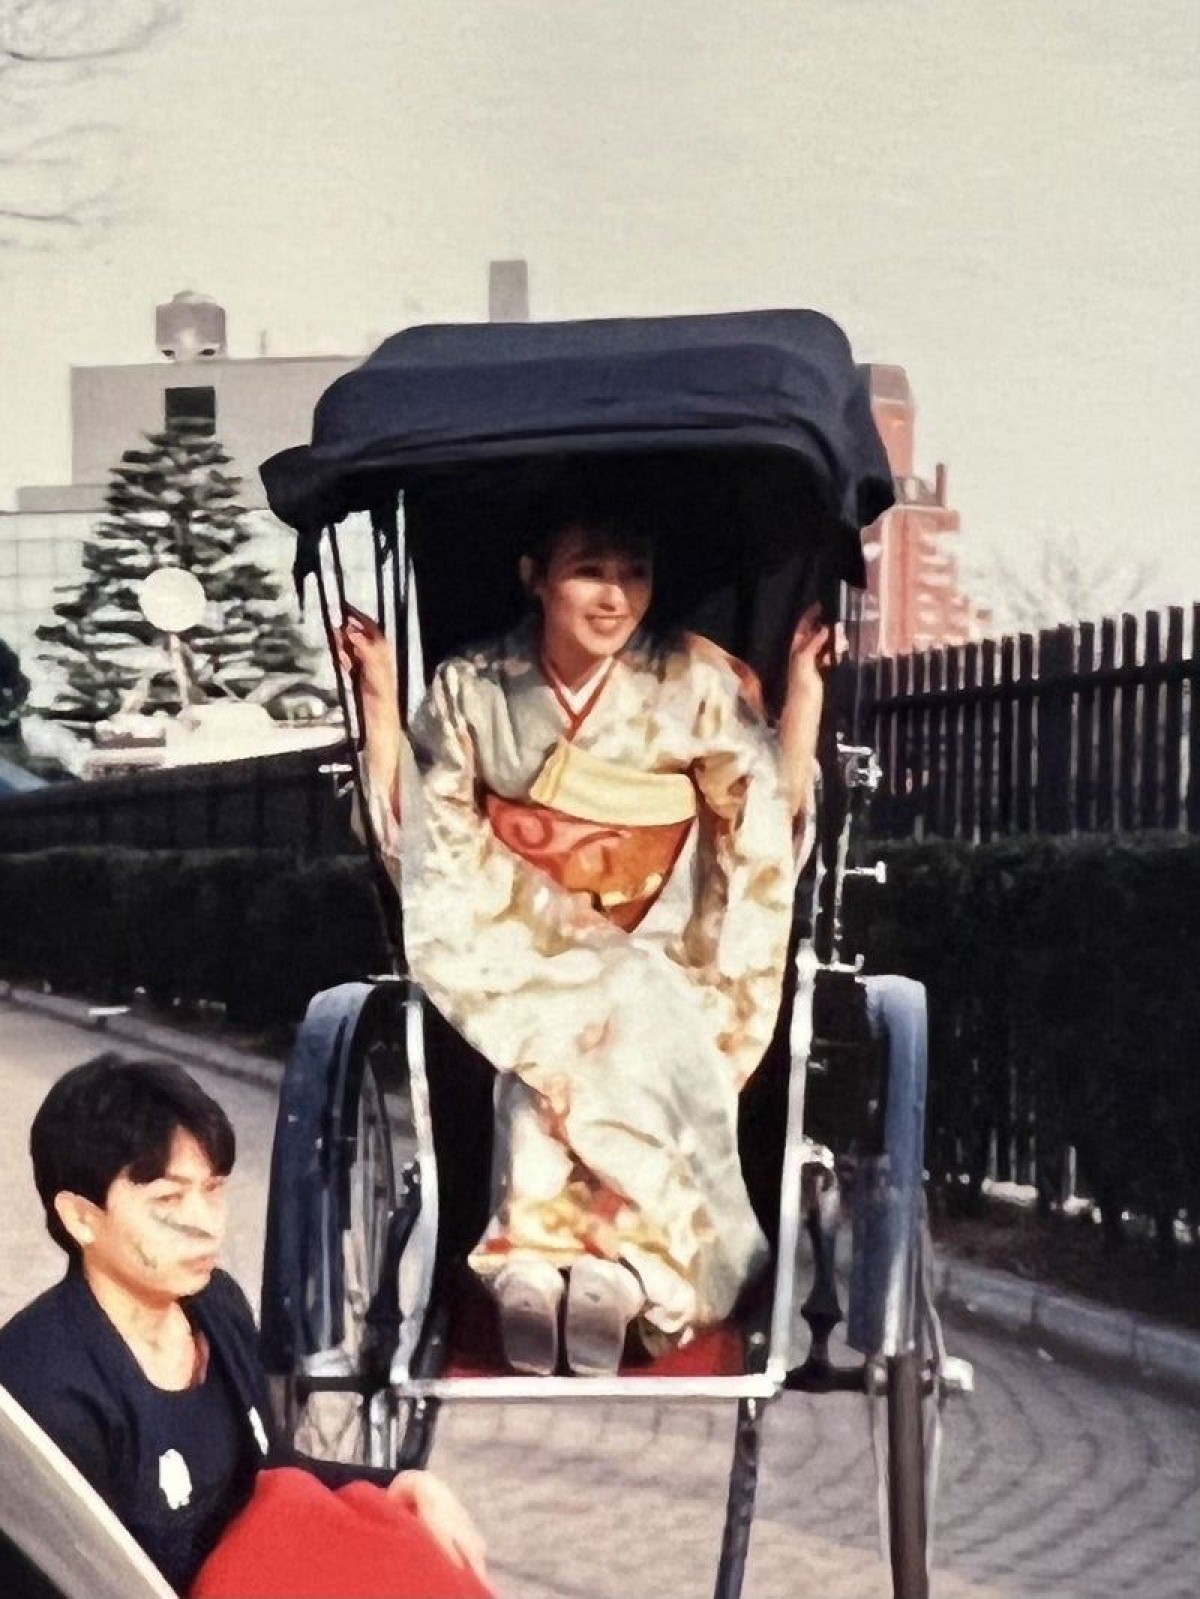 20歳だった渡辺美奈代、初々しい振り袖姿に反響「可愛すぎます」